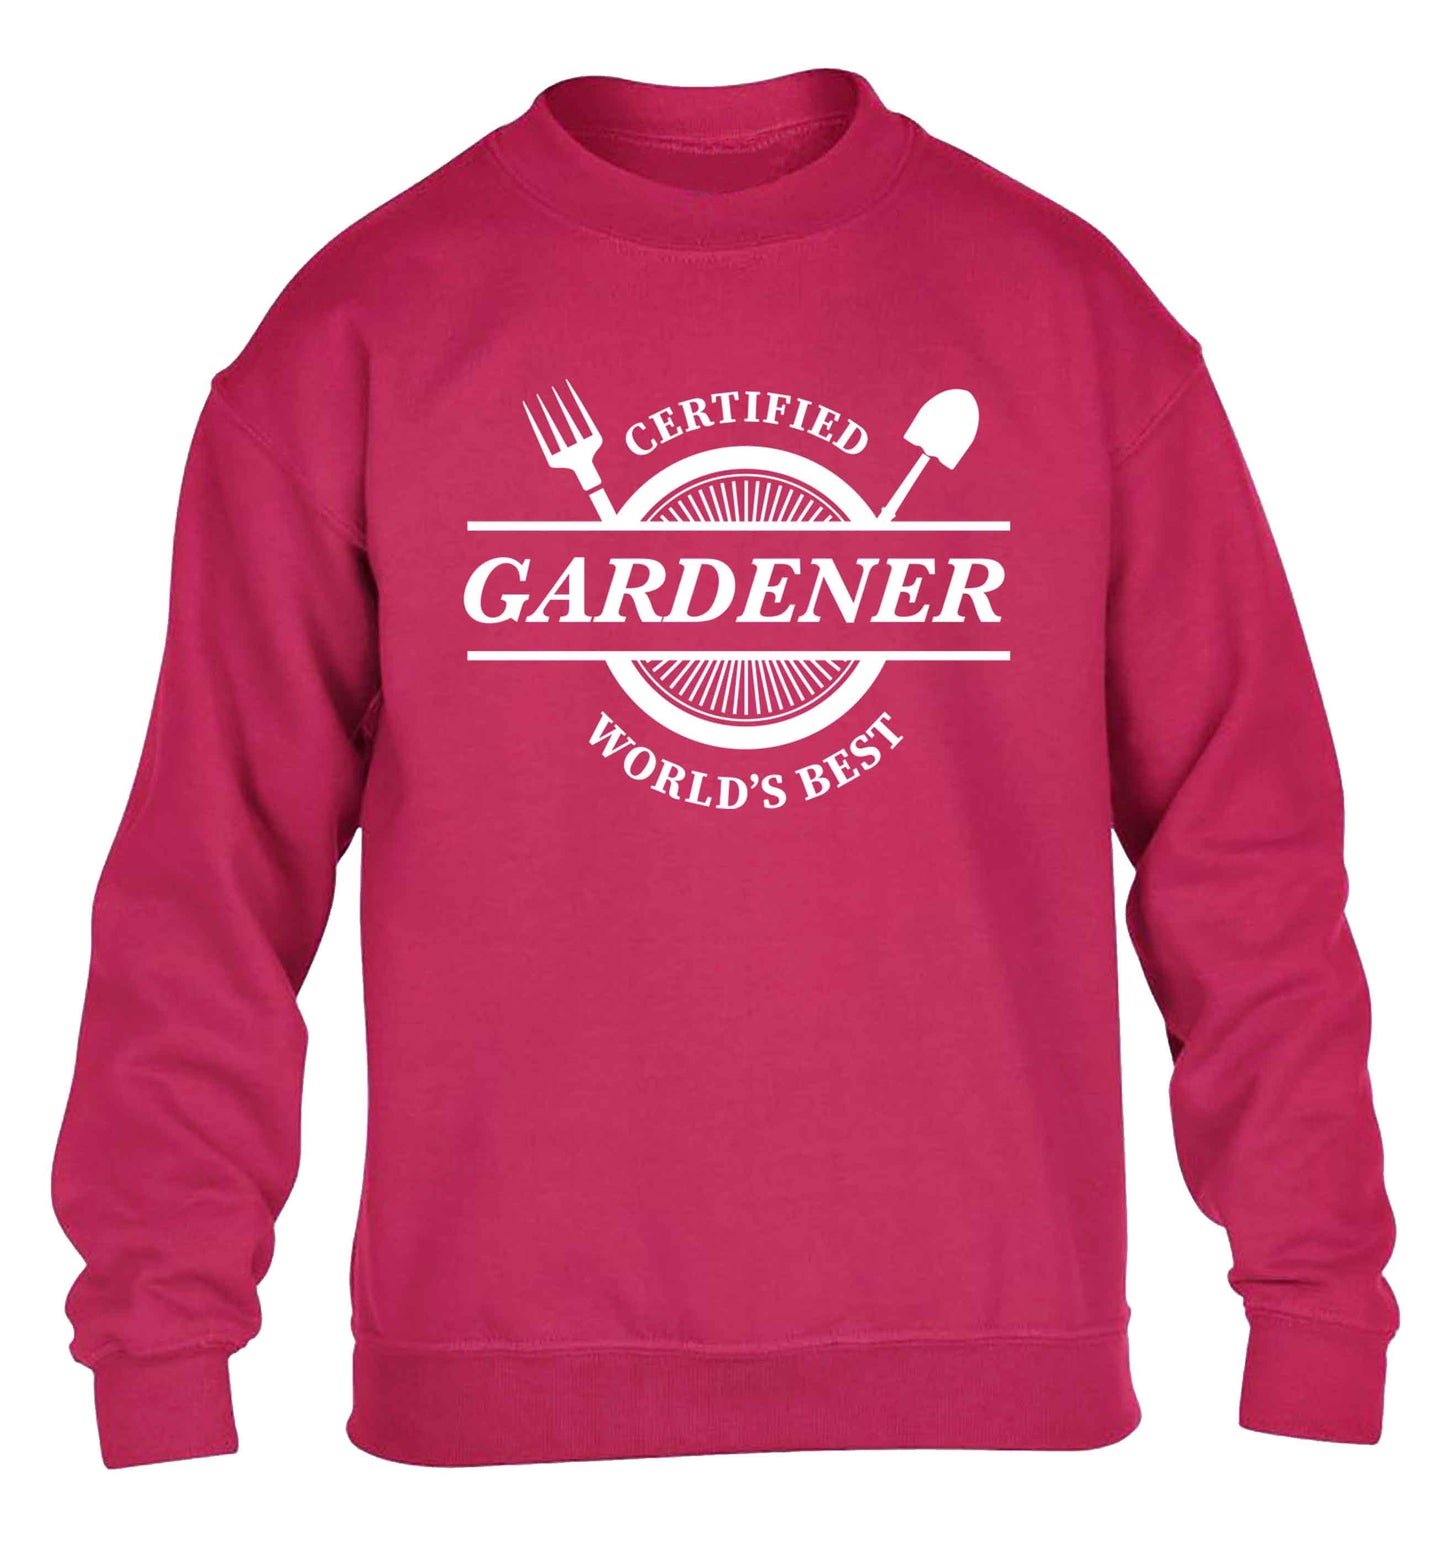 Certified gardener worlds best children's pink sweater 12-13 Years